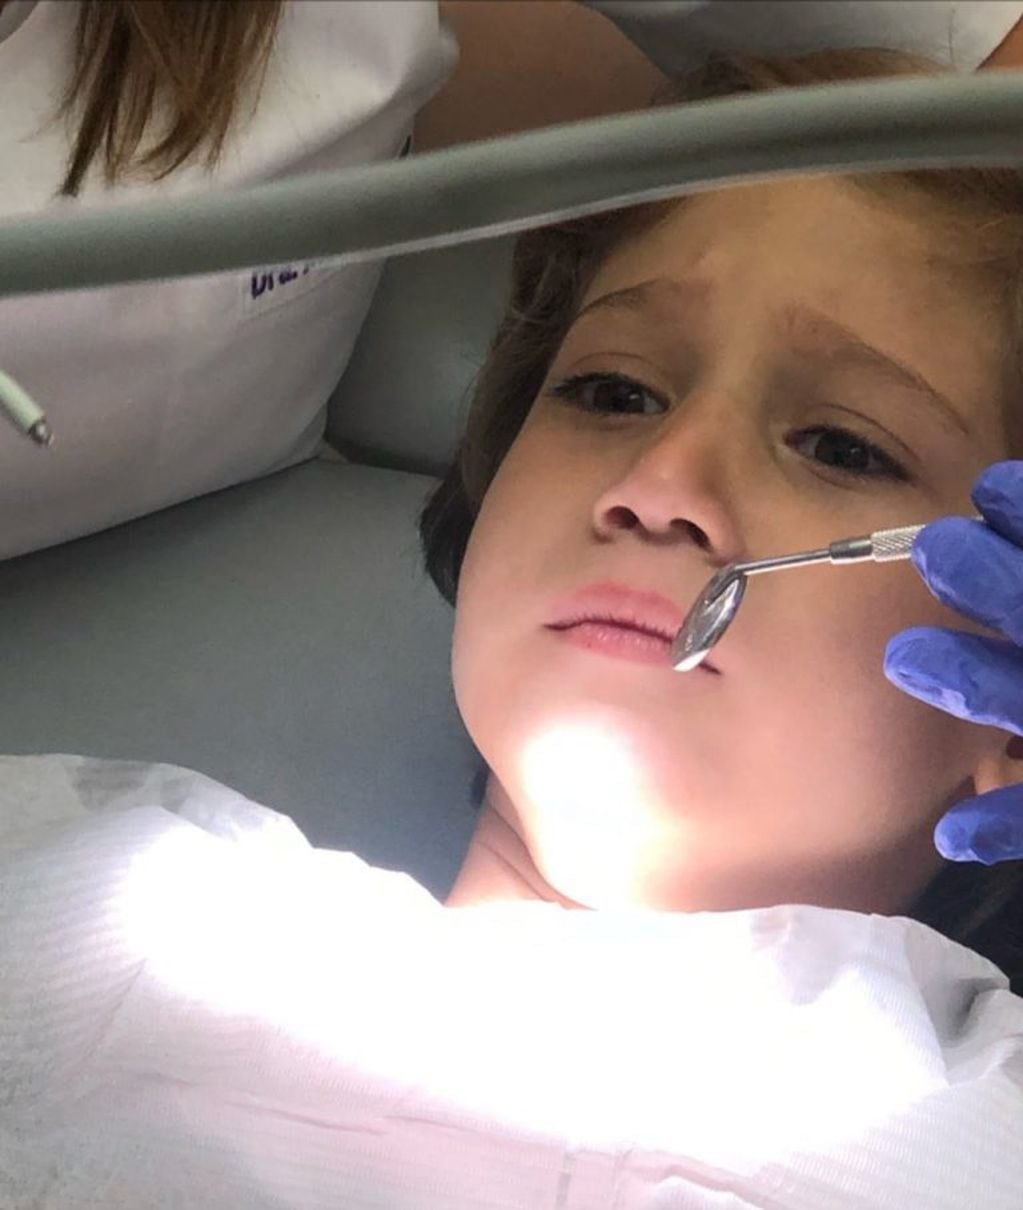 La cara de Momo en el dentista (@Jmena).